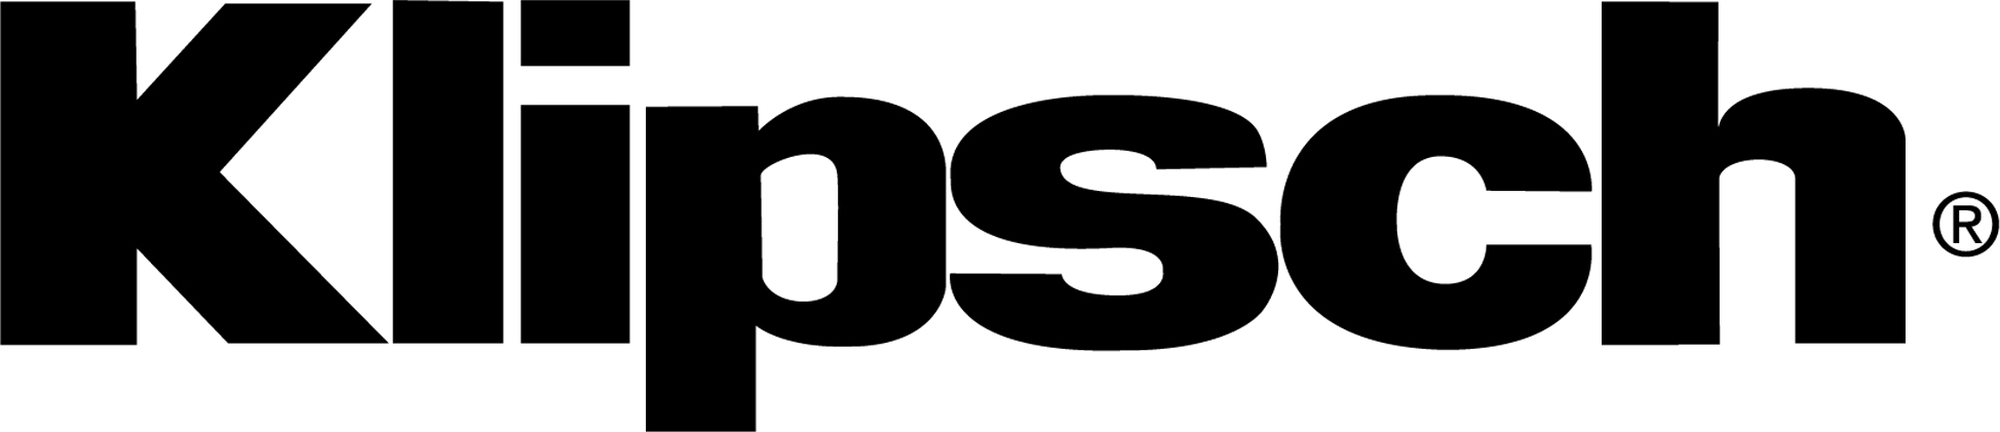 Klipsch_logo.png